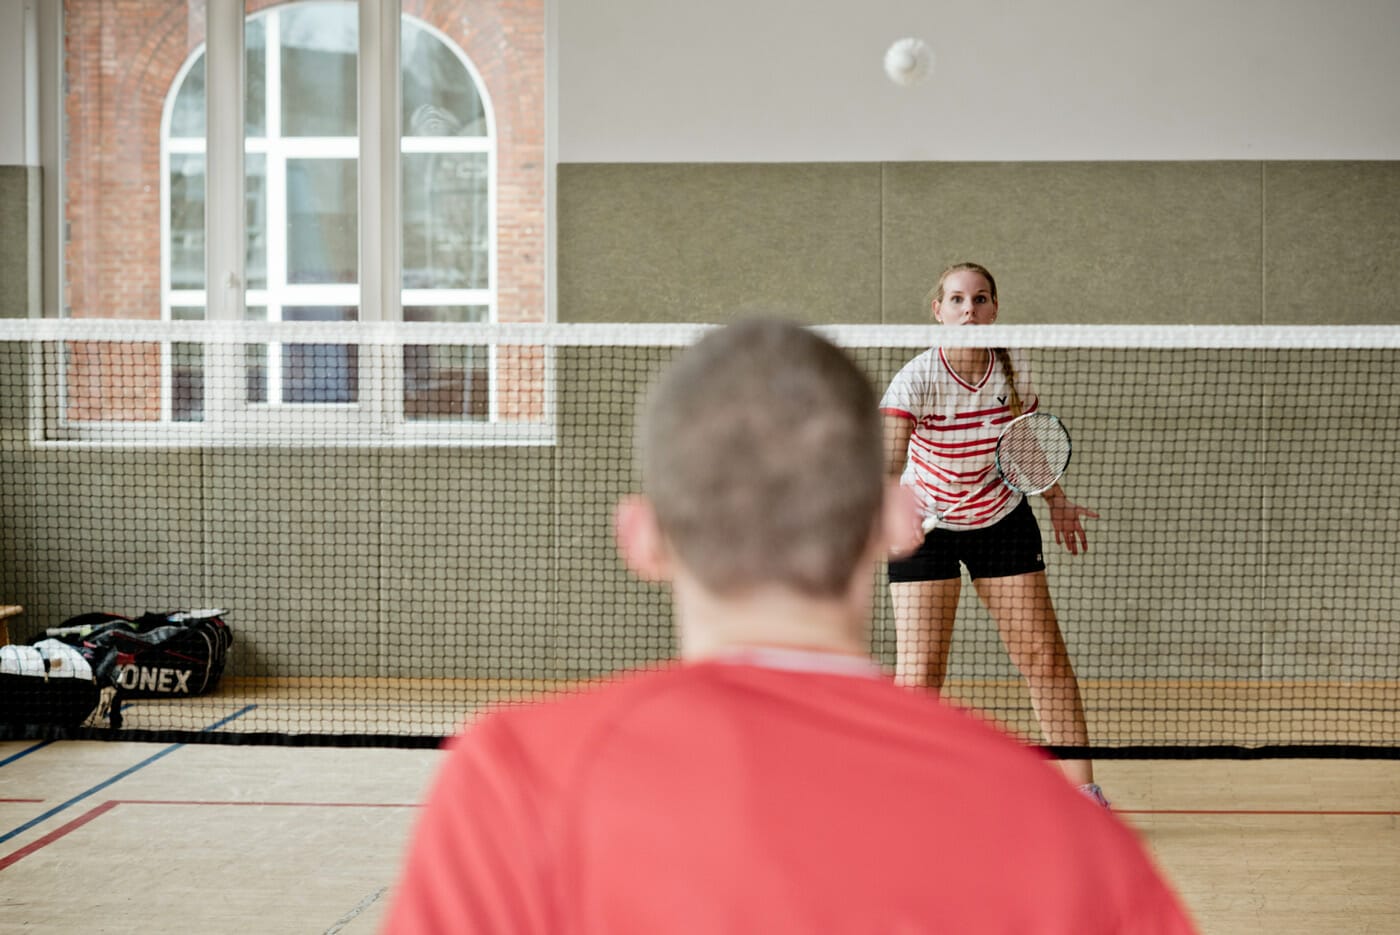 Inken in Aktion beim Badminton spielen